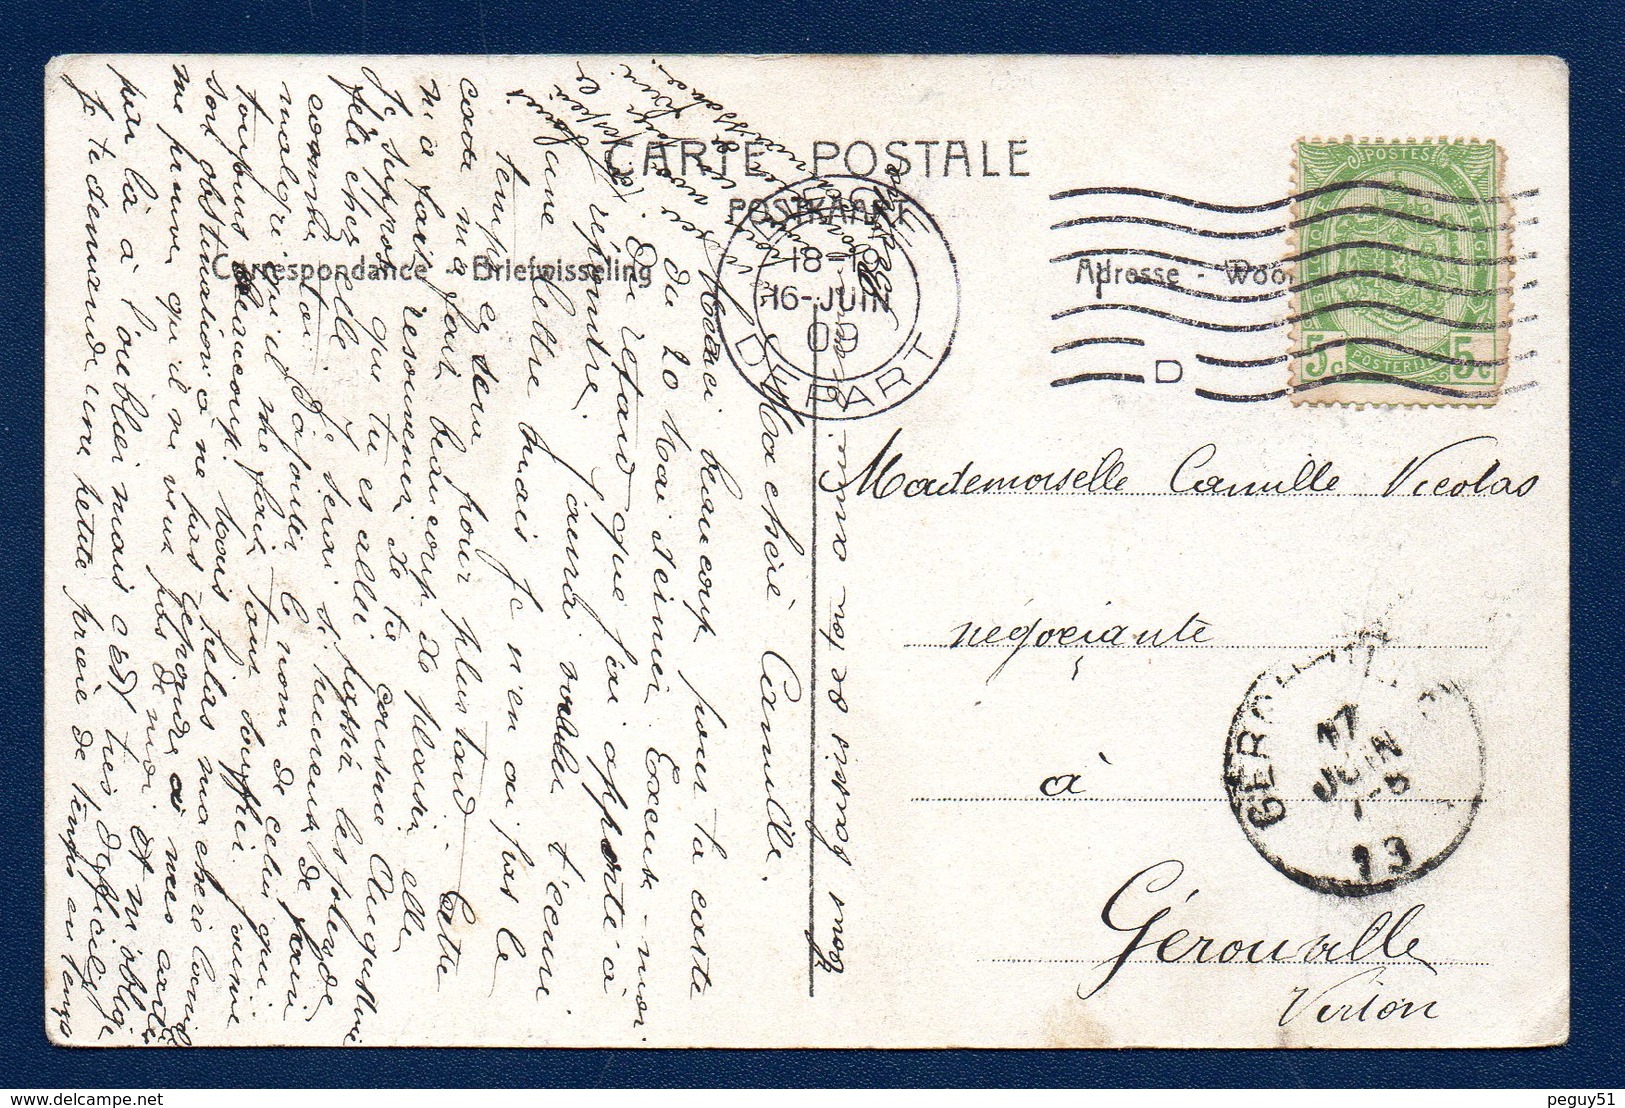 Vaux Sous Chèvremont ( Chaudfontaine). La Vesdre. L' église Du Couvent Et Le Château Hauster ( XVIIè S.) 1909 - Chaudfontaine